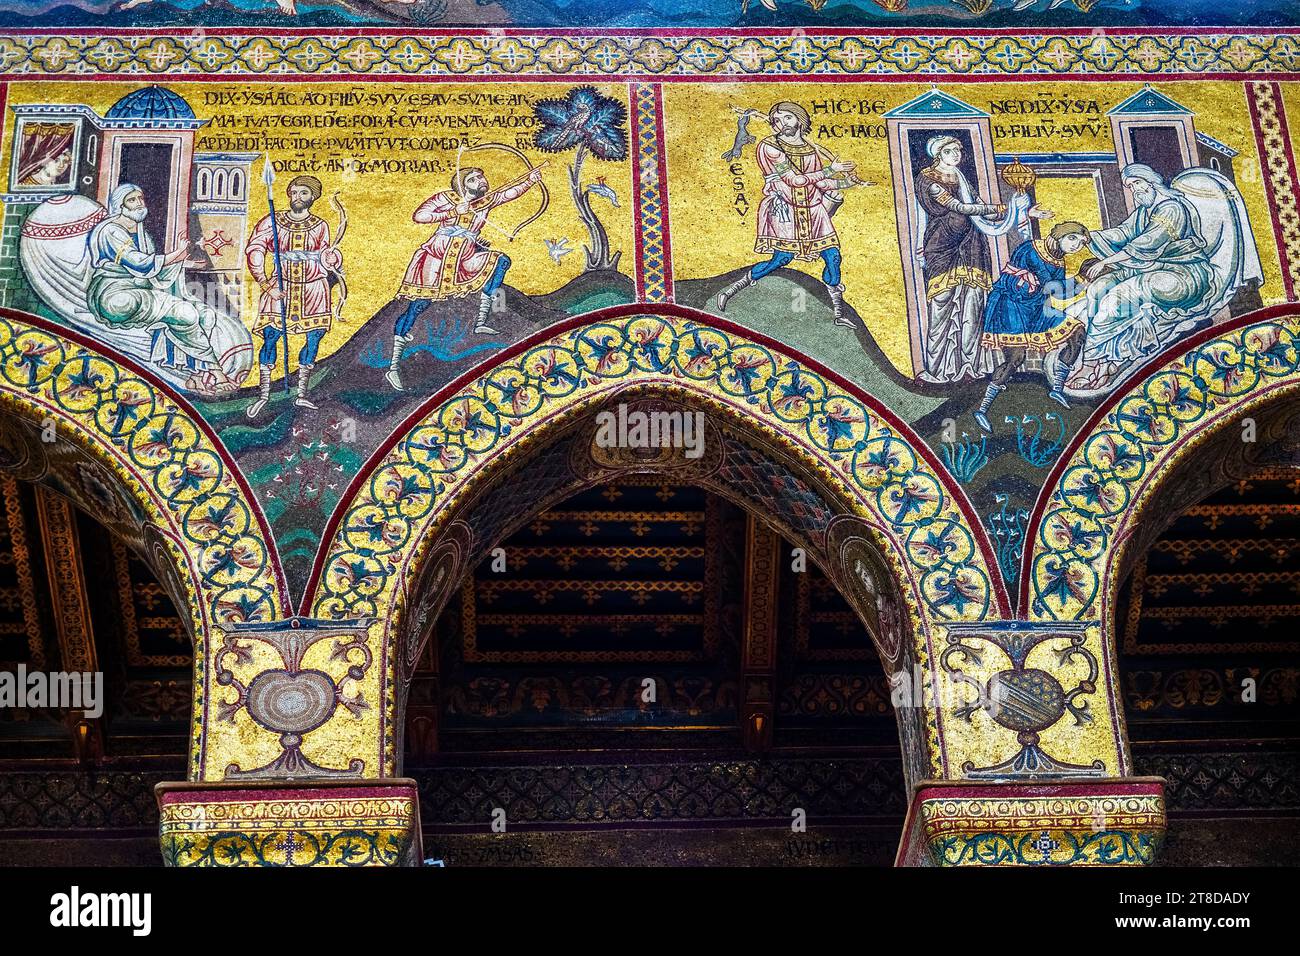 Mosaïques byzantines reproduisant des histoires de l'ancien Testament dans la cathédrale de Monreale, Palerme - Sicile, Italie Banque D'Images